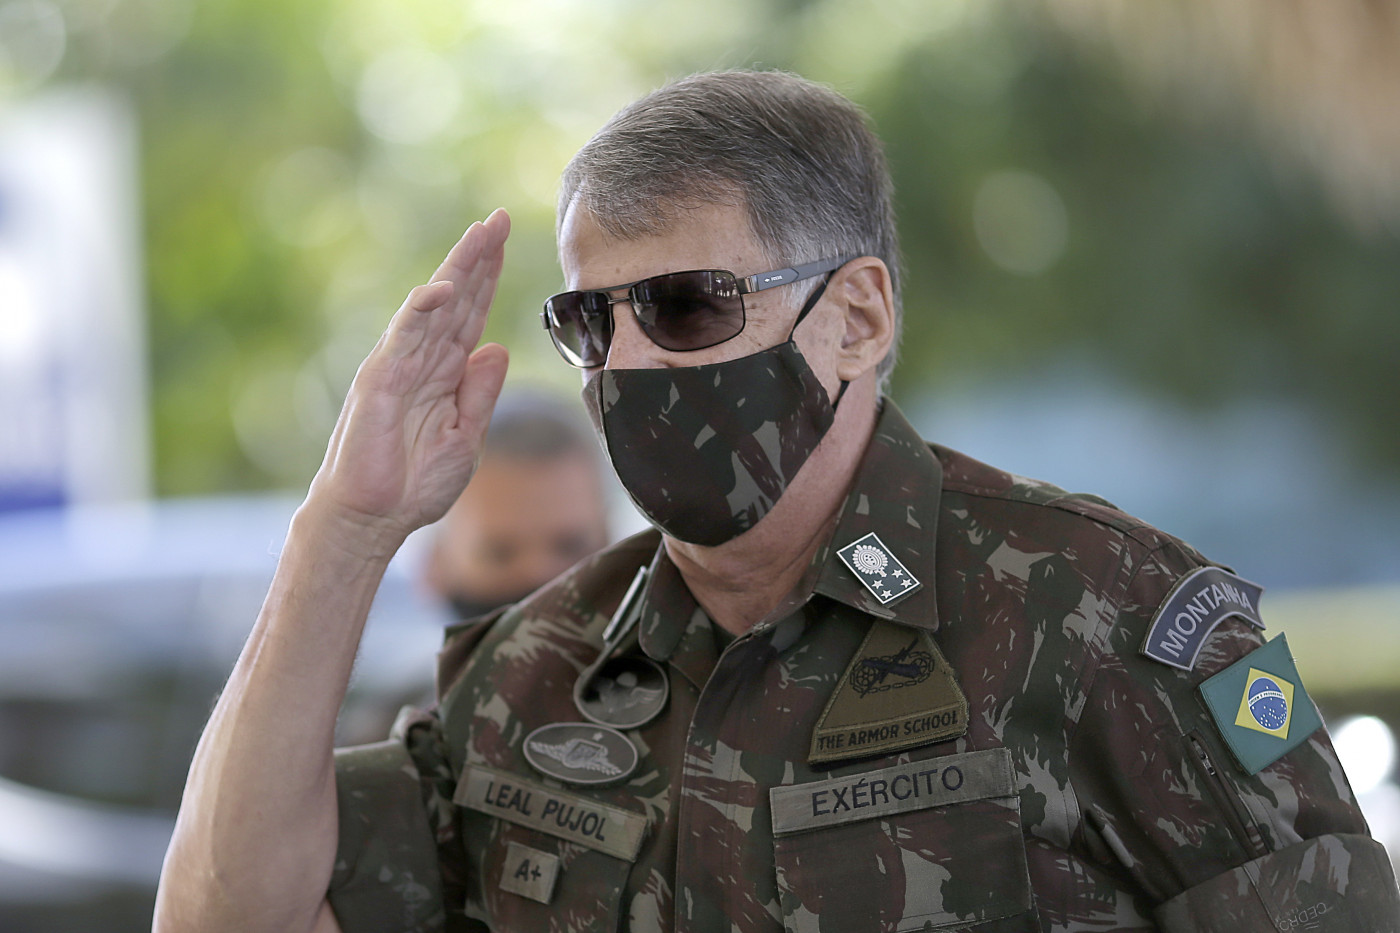 Edson Leal Pujol, ex-comandante do Exército, chega de máscara ao Ministério da Defesa